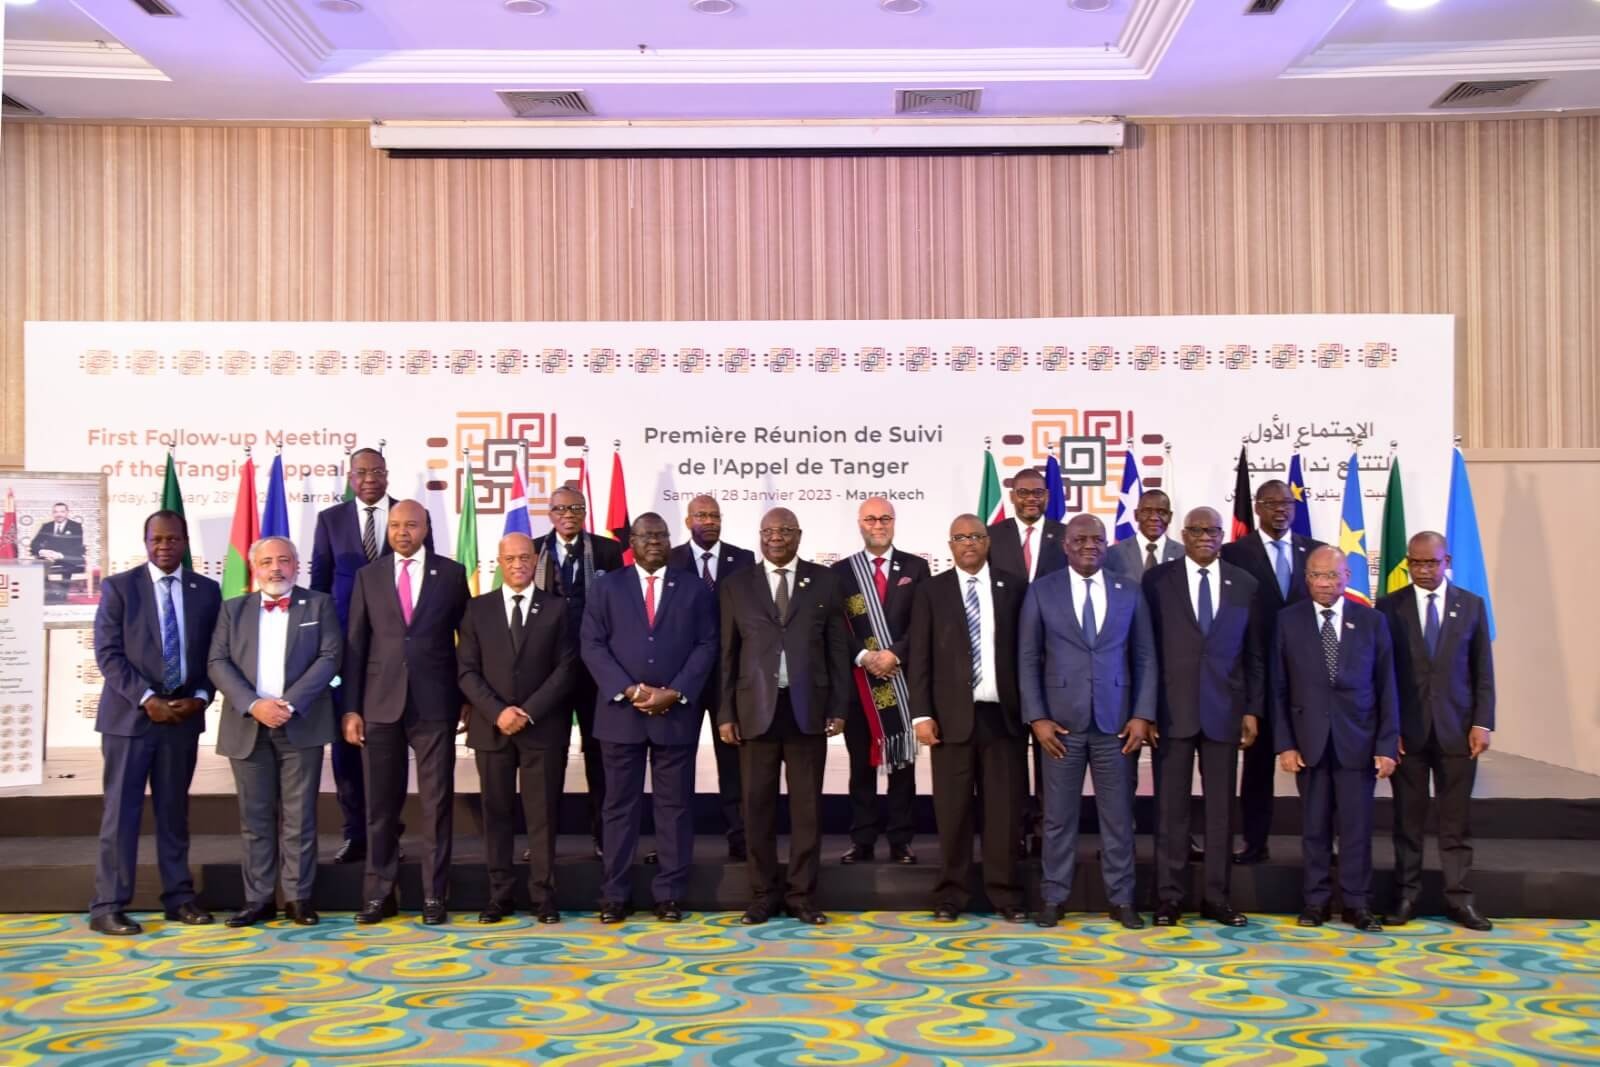 وزراء أفارقة يجتمعون بمراكش من أجل الإعداد لاستبعاد الجمهورية الوهمية من الإتحاد الإفريقي